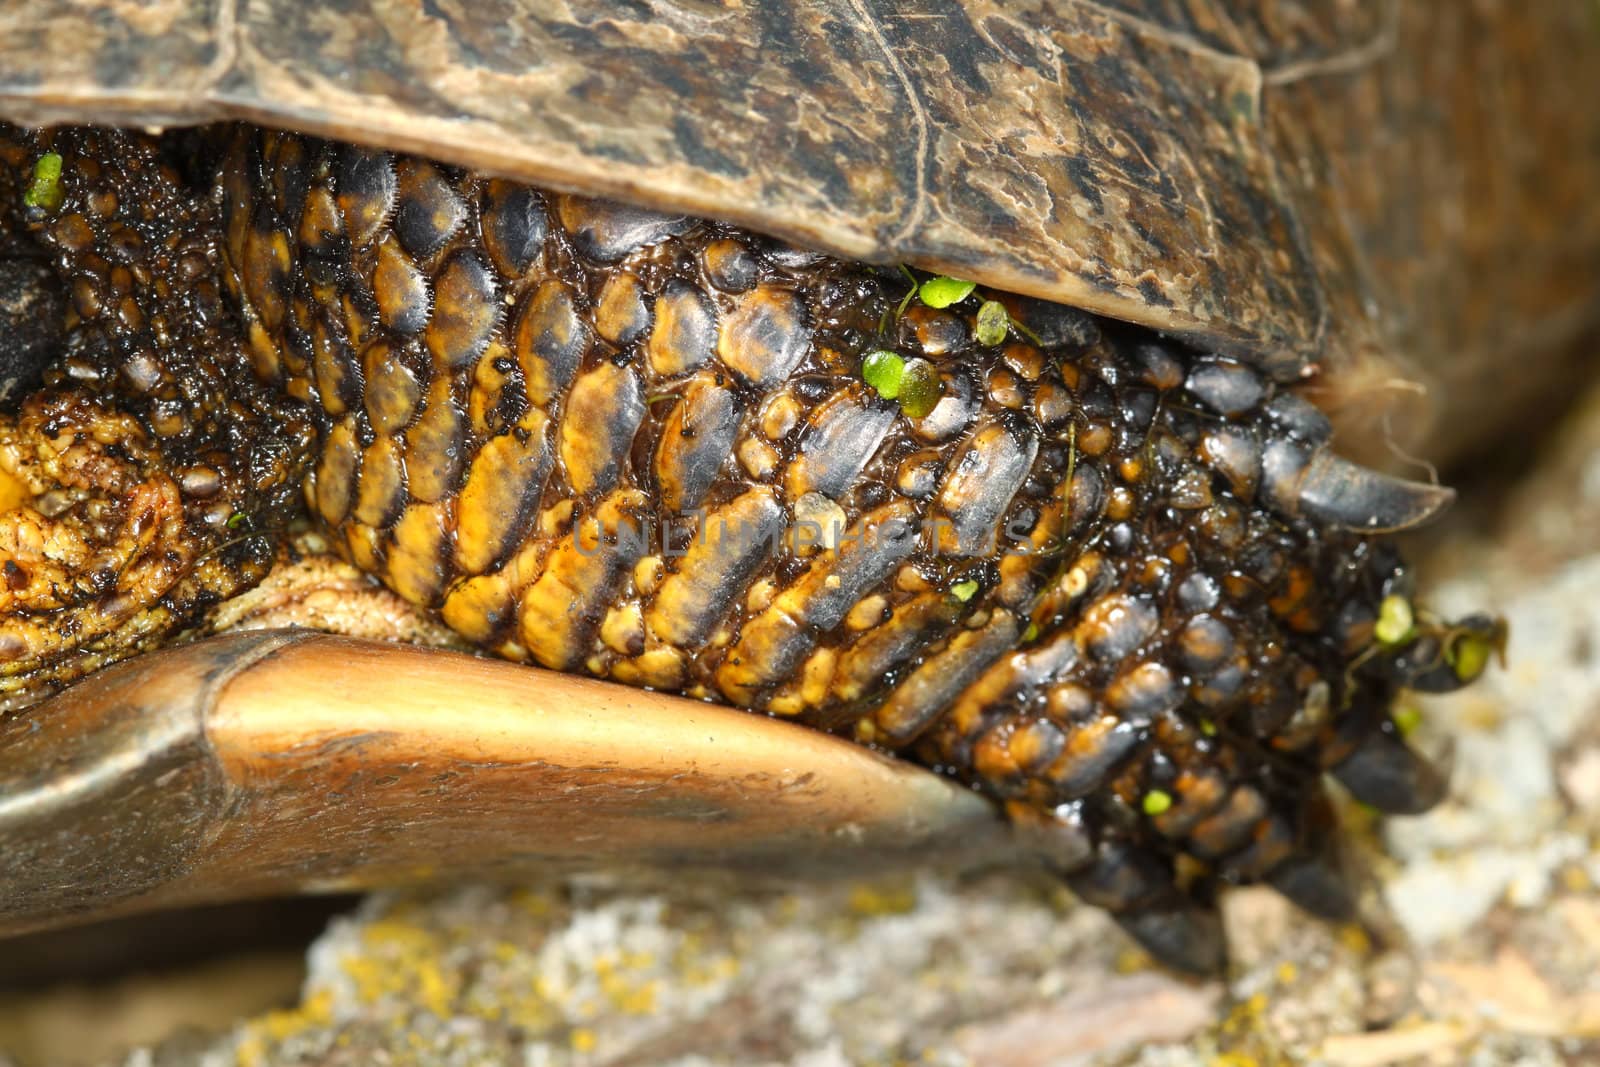 Blandings Turtle Leg by Wirepec